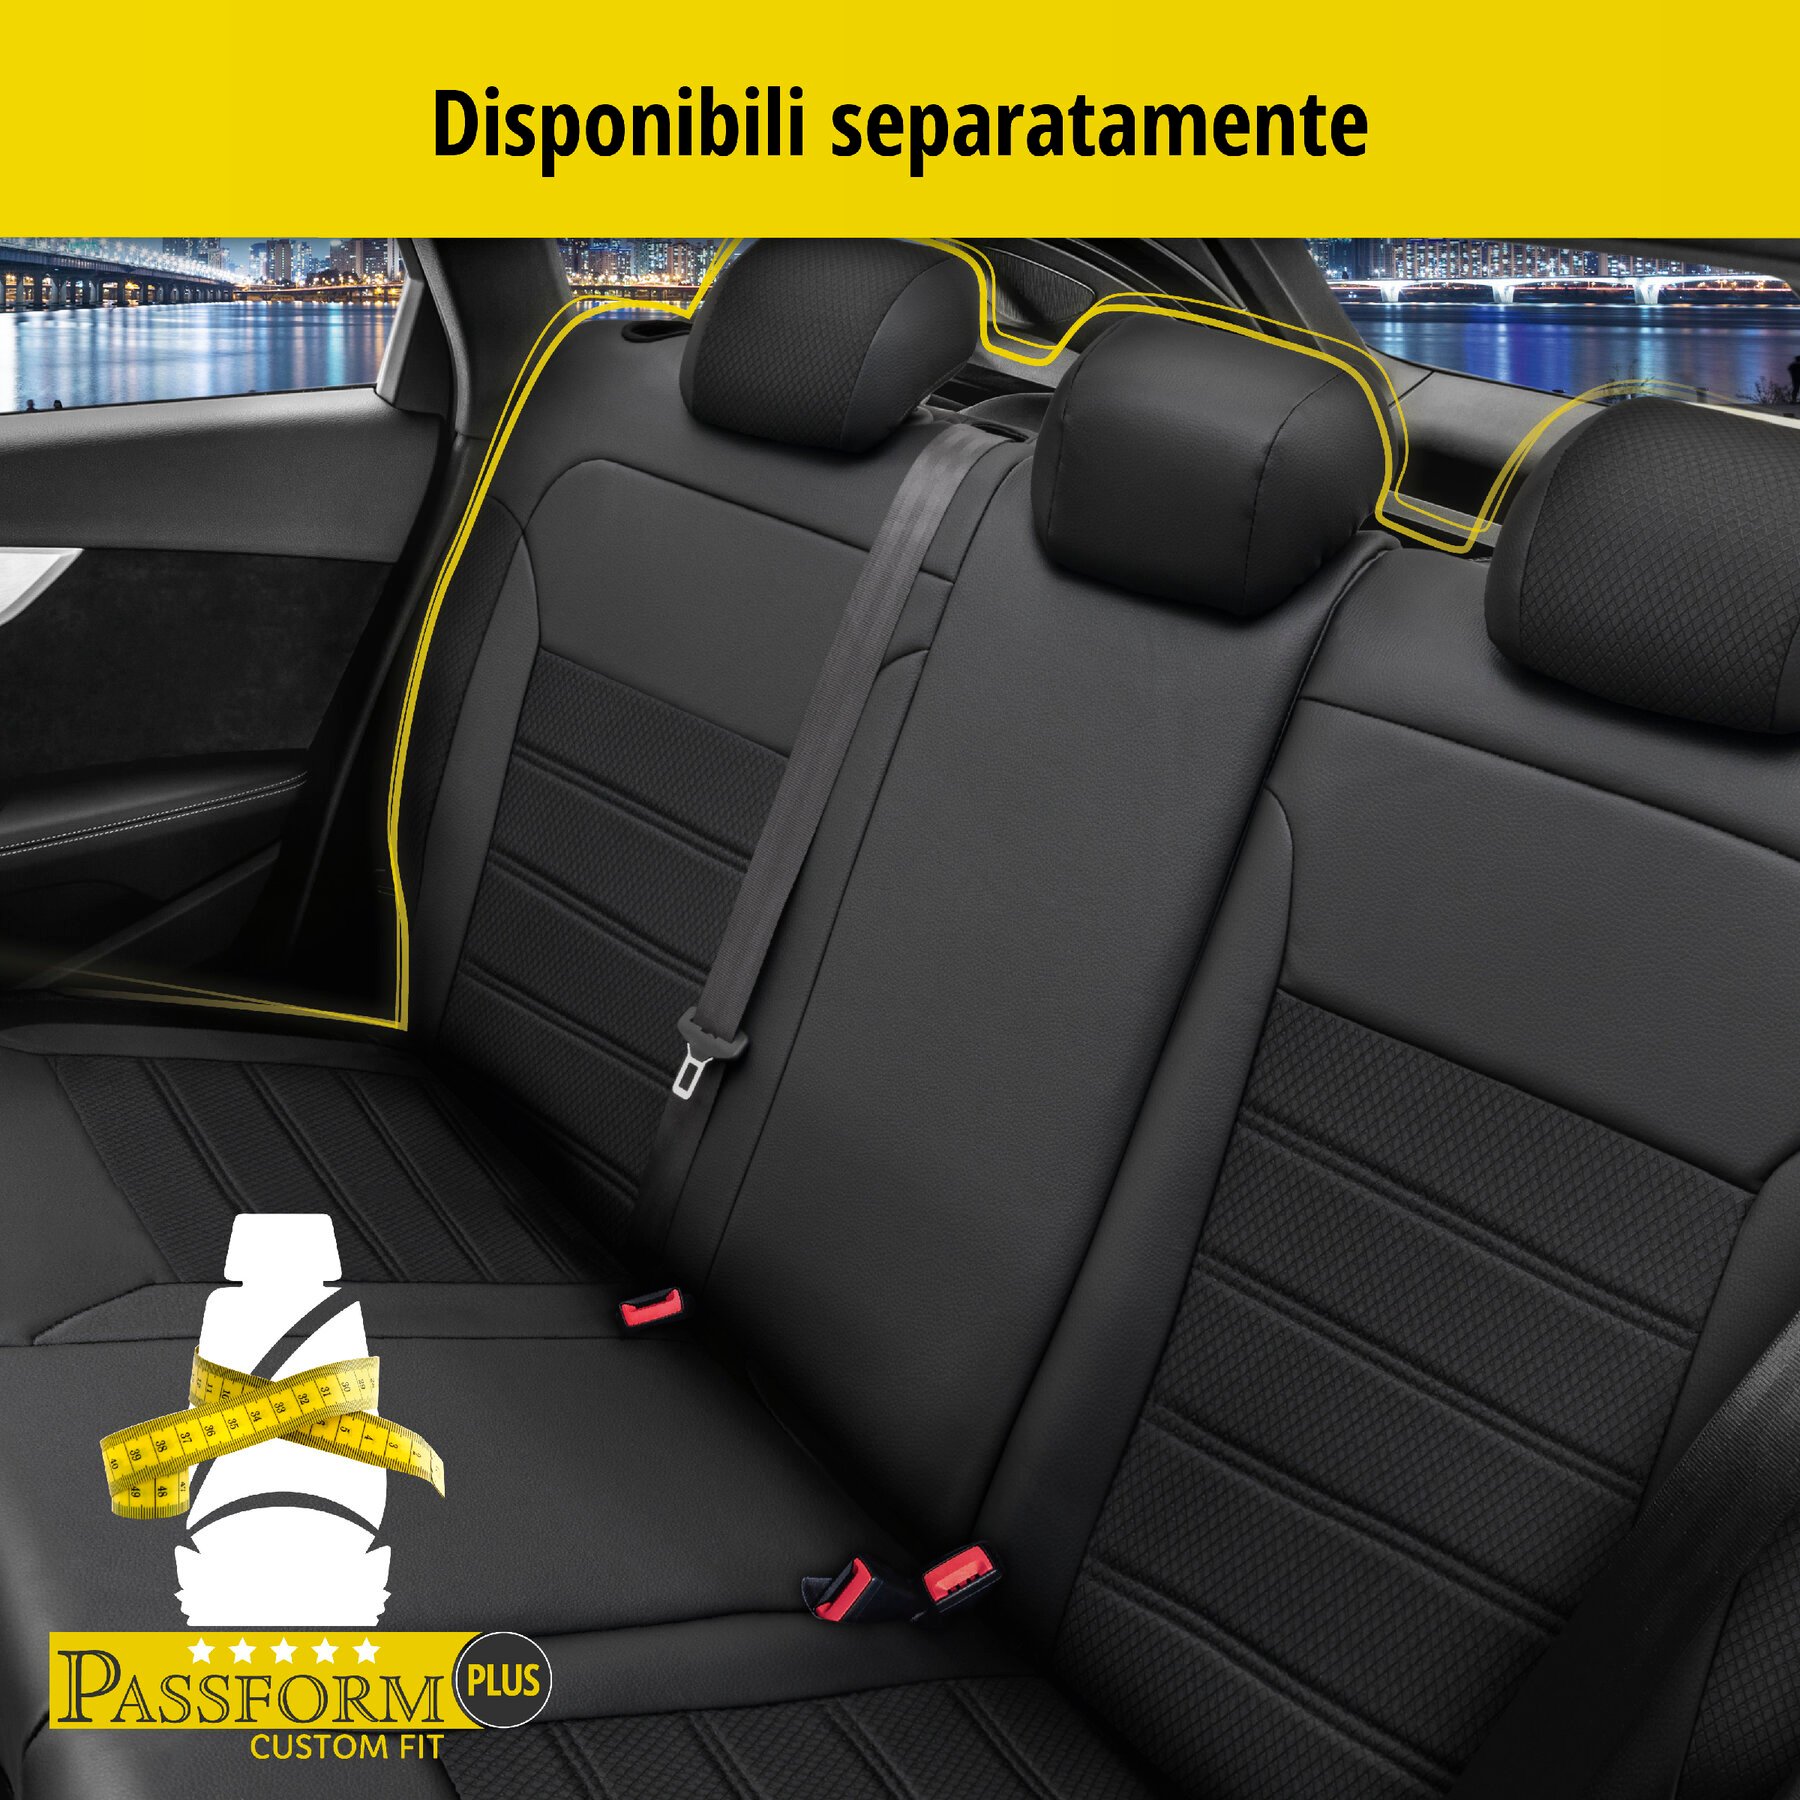 Coprisedili Aversa per Fiat 500 (312) 07/2007-Oggi, 2 coprisedili per sedili normali